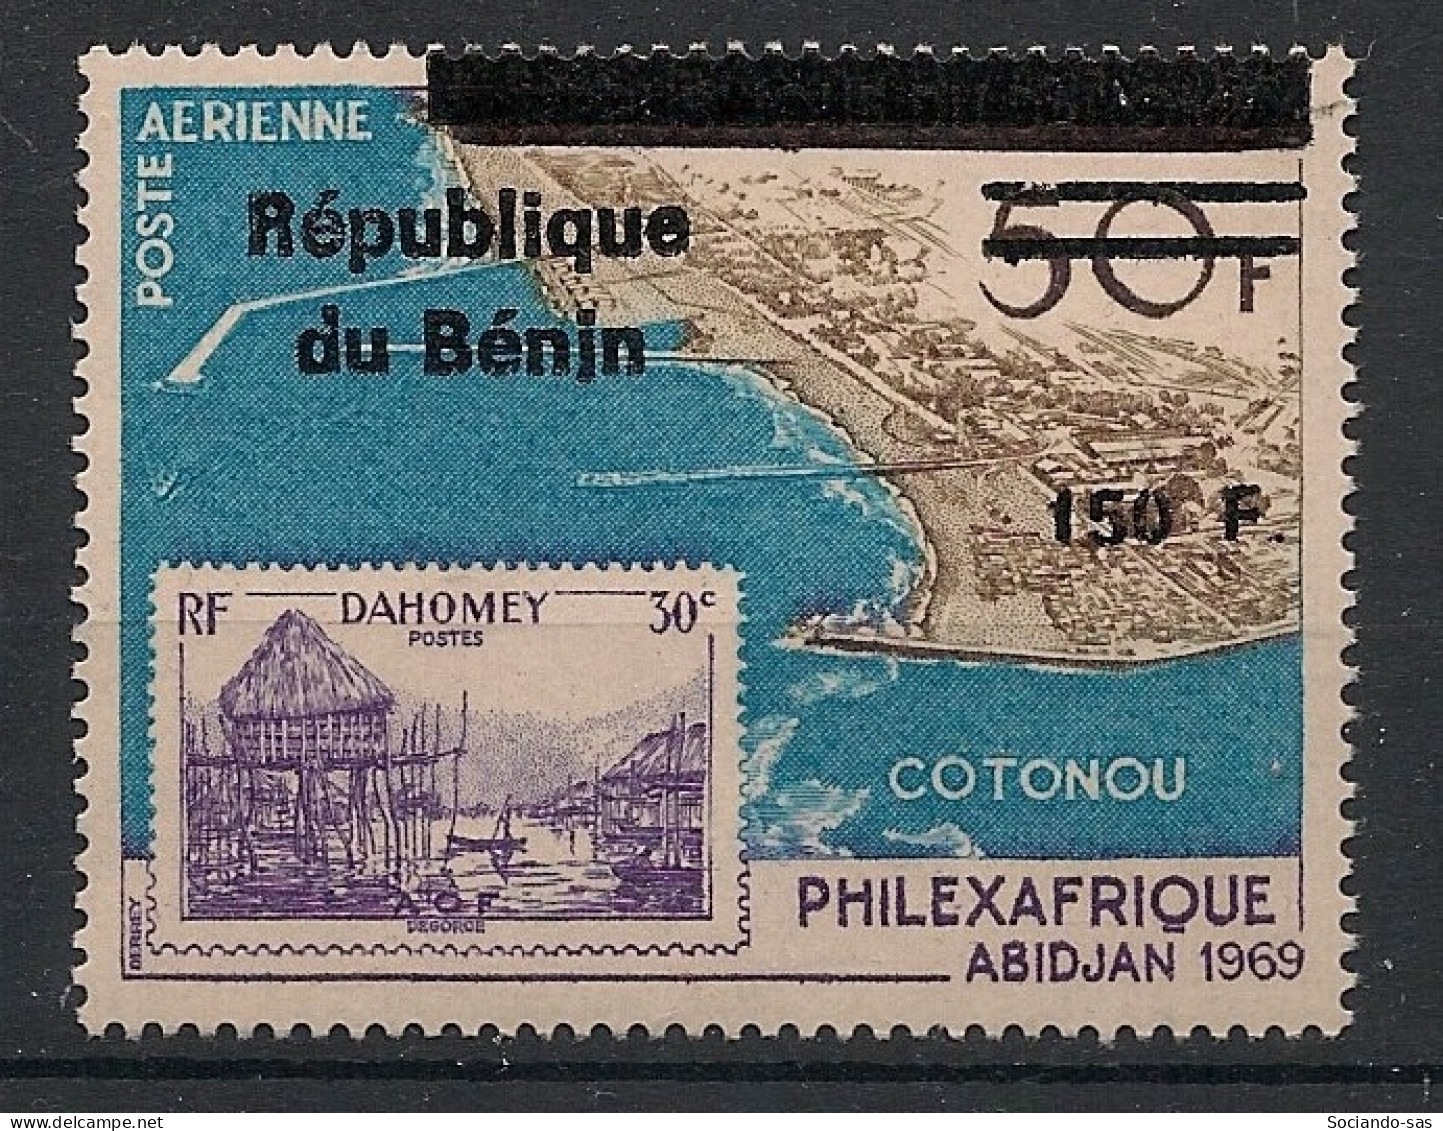 BENIN - 1996 - N°Mi. 739 - Philexafrique 150F / 30F - Neuf Luxe ** / MNH / Postfrisch - Benin – Dahomey (1960-...)